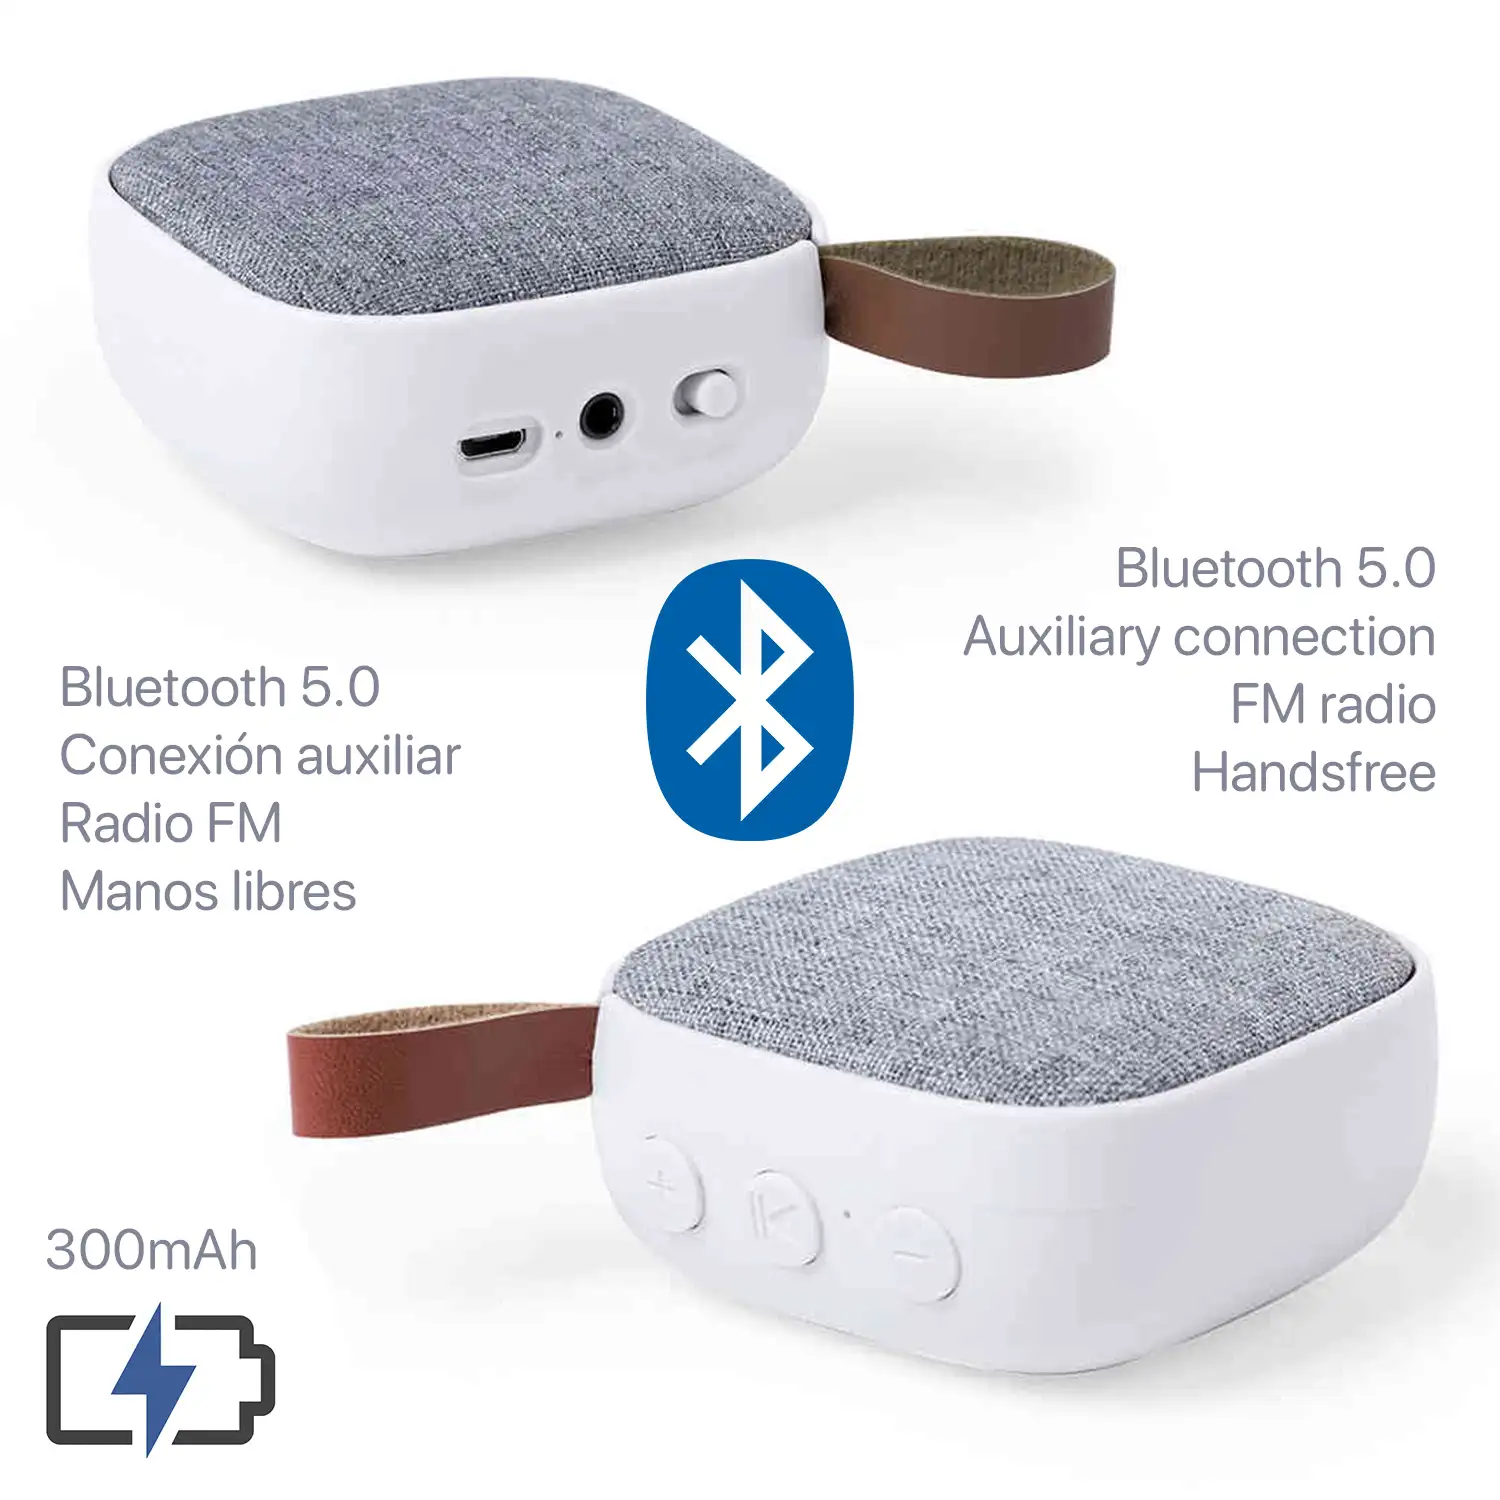 Altavoz Nerby Bluetooth 5.0 3W. Asa de polipiel. Función manos libres y radio FM, entrada auxiliar.